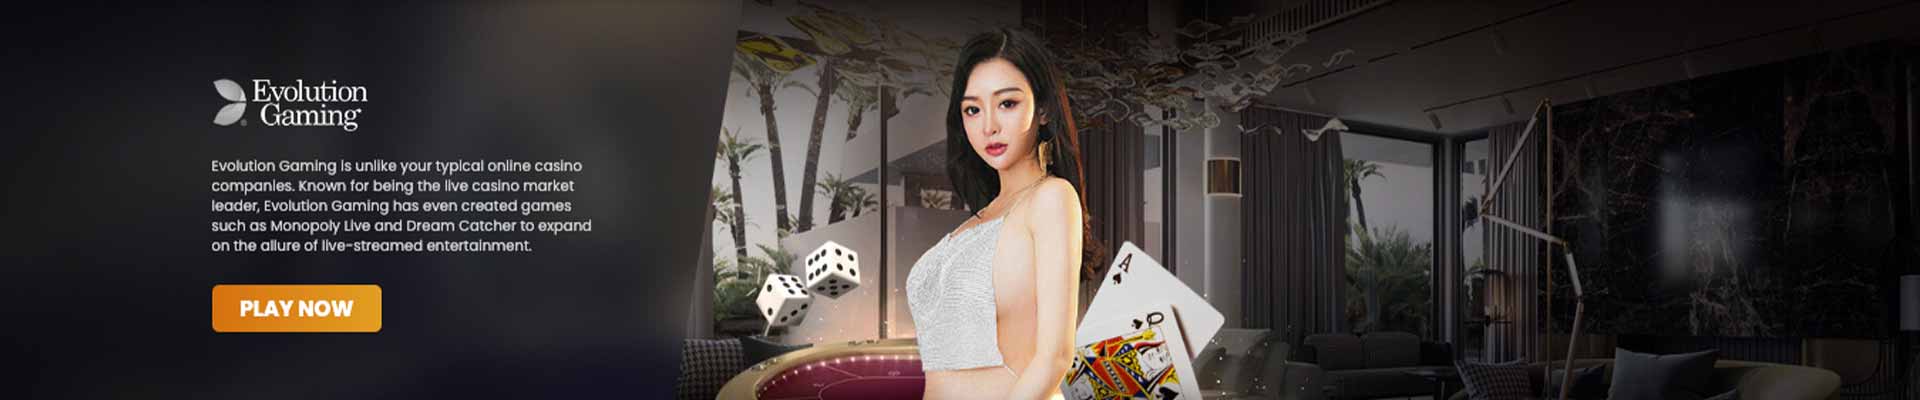 BP9 Live Casino Evolution Gaming Banner